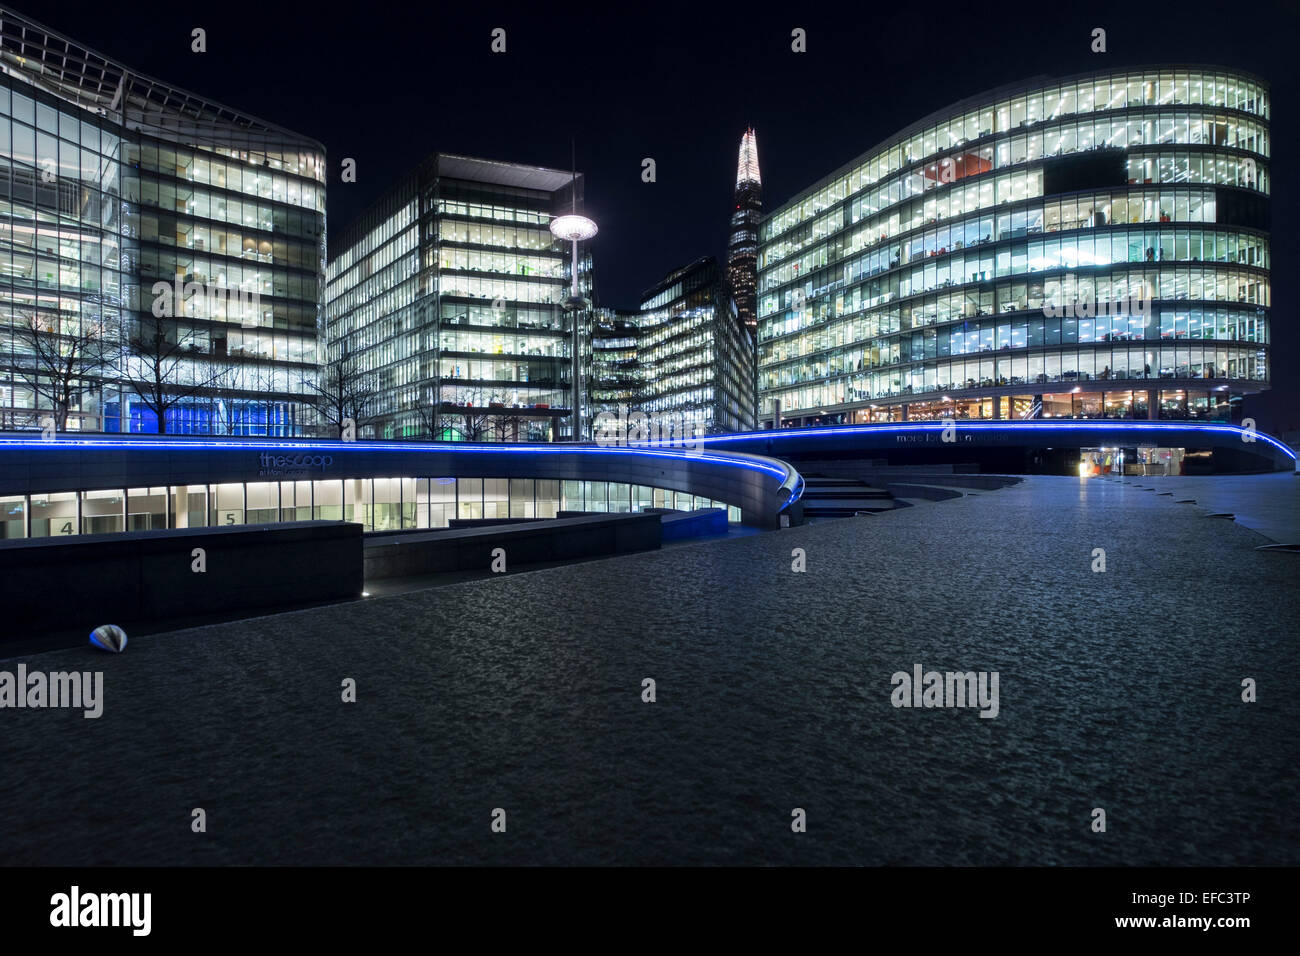 Ein Stadtbild von London, England, einschließlich der Entwicklung mehr London. Stockfoto